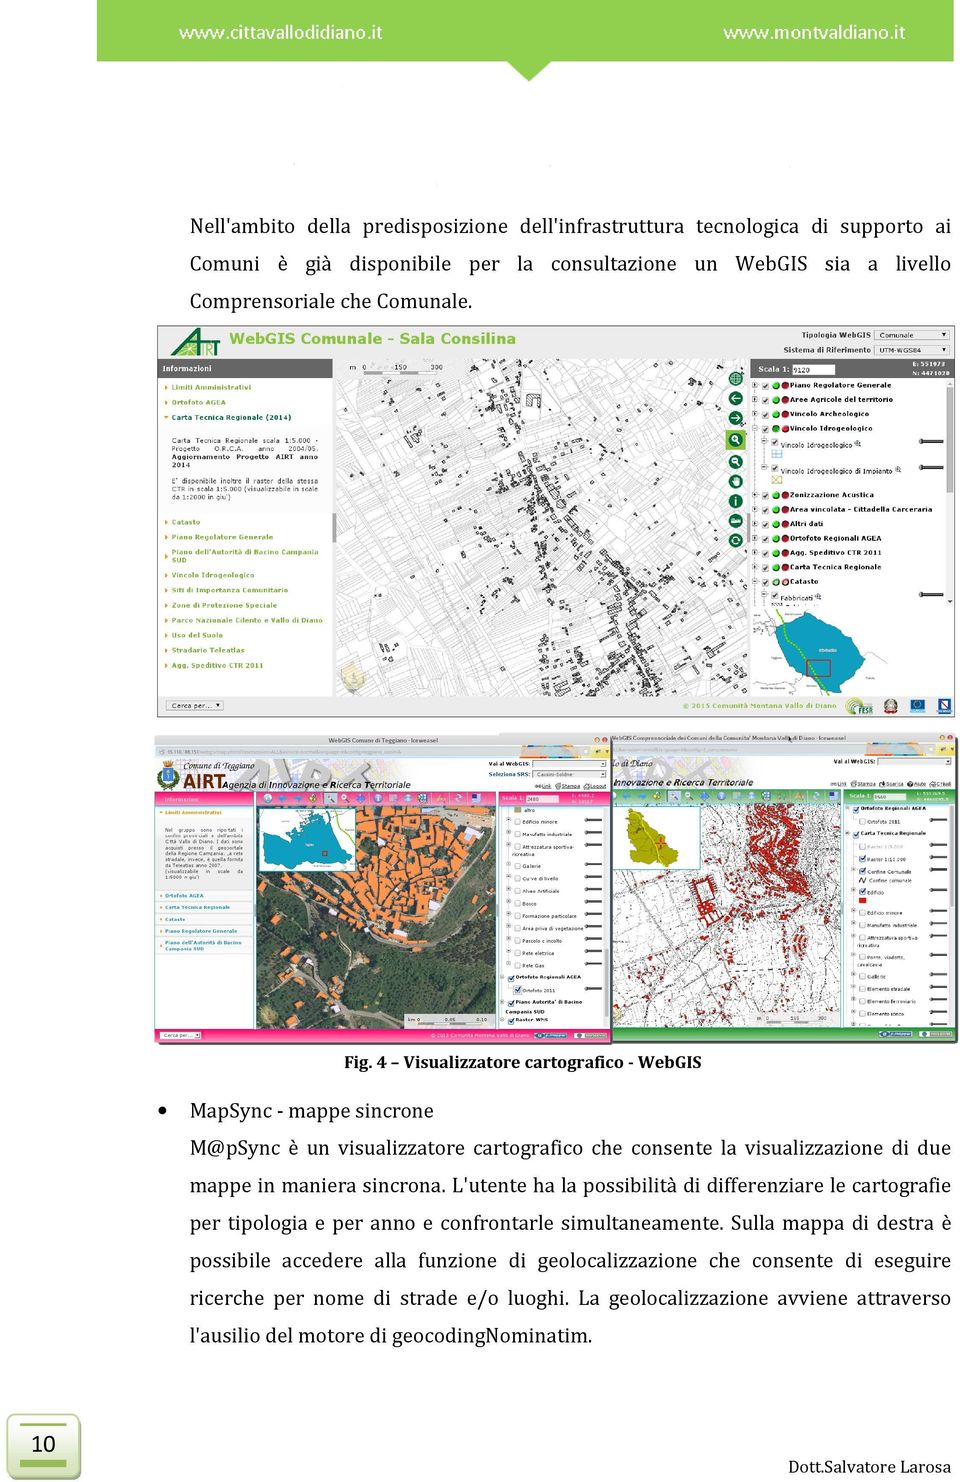 4 Visualizzatore cartografico - WebGIS MapSync - mappe sincrone M@pSync è un visualizzatore cartografico che consente la visualizzazione di due mappe in maniera sincrona.